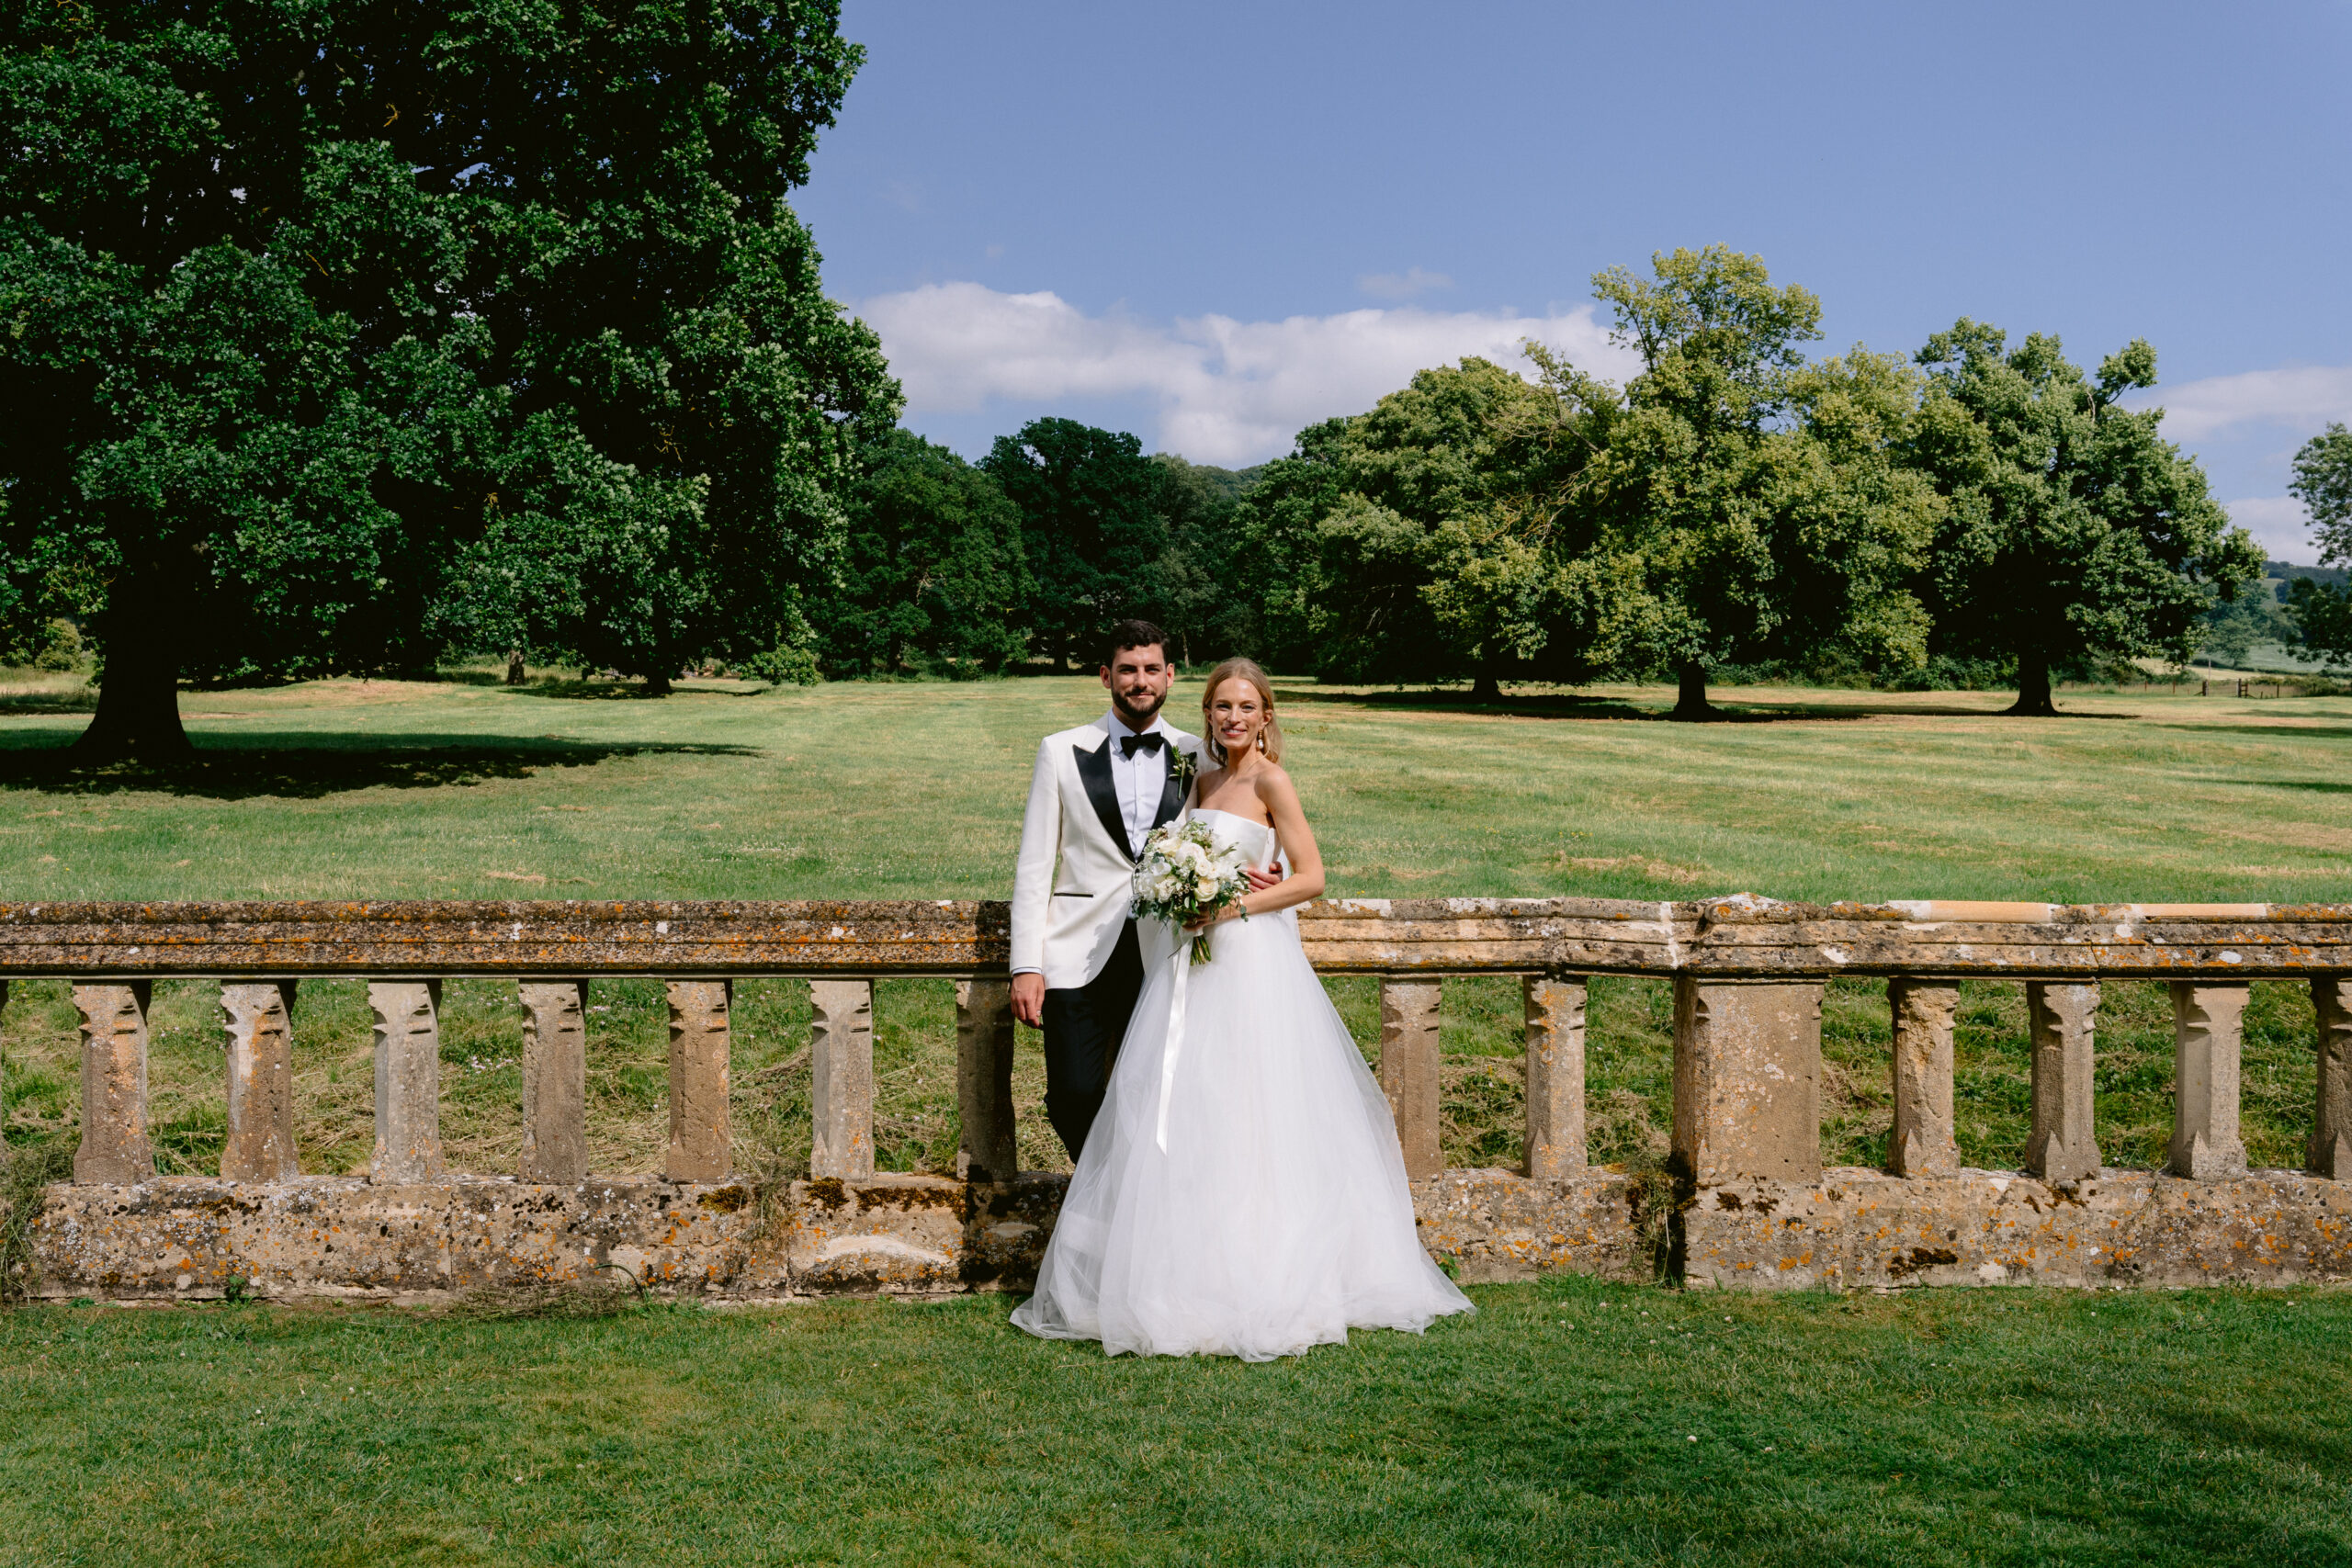 Sudeley Castle, Sudeley Castle Wedding, Sudeley Castle Wedding Photographer, Cheltenham Wedding Photographer, Winchcombe Wedding Photographer, Cotswolds Wedding Photographer